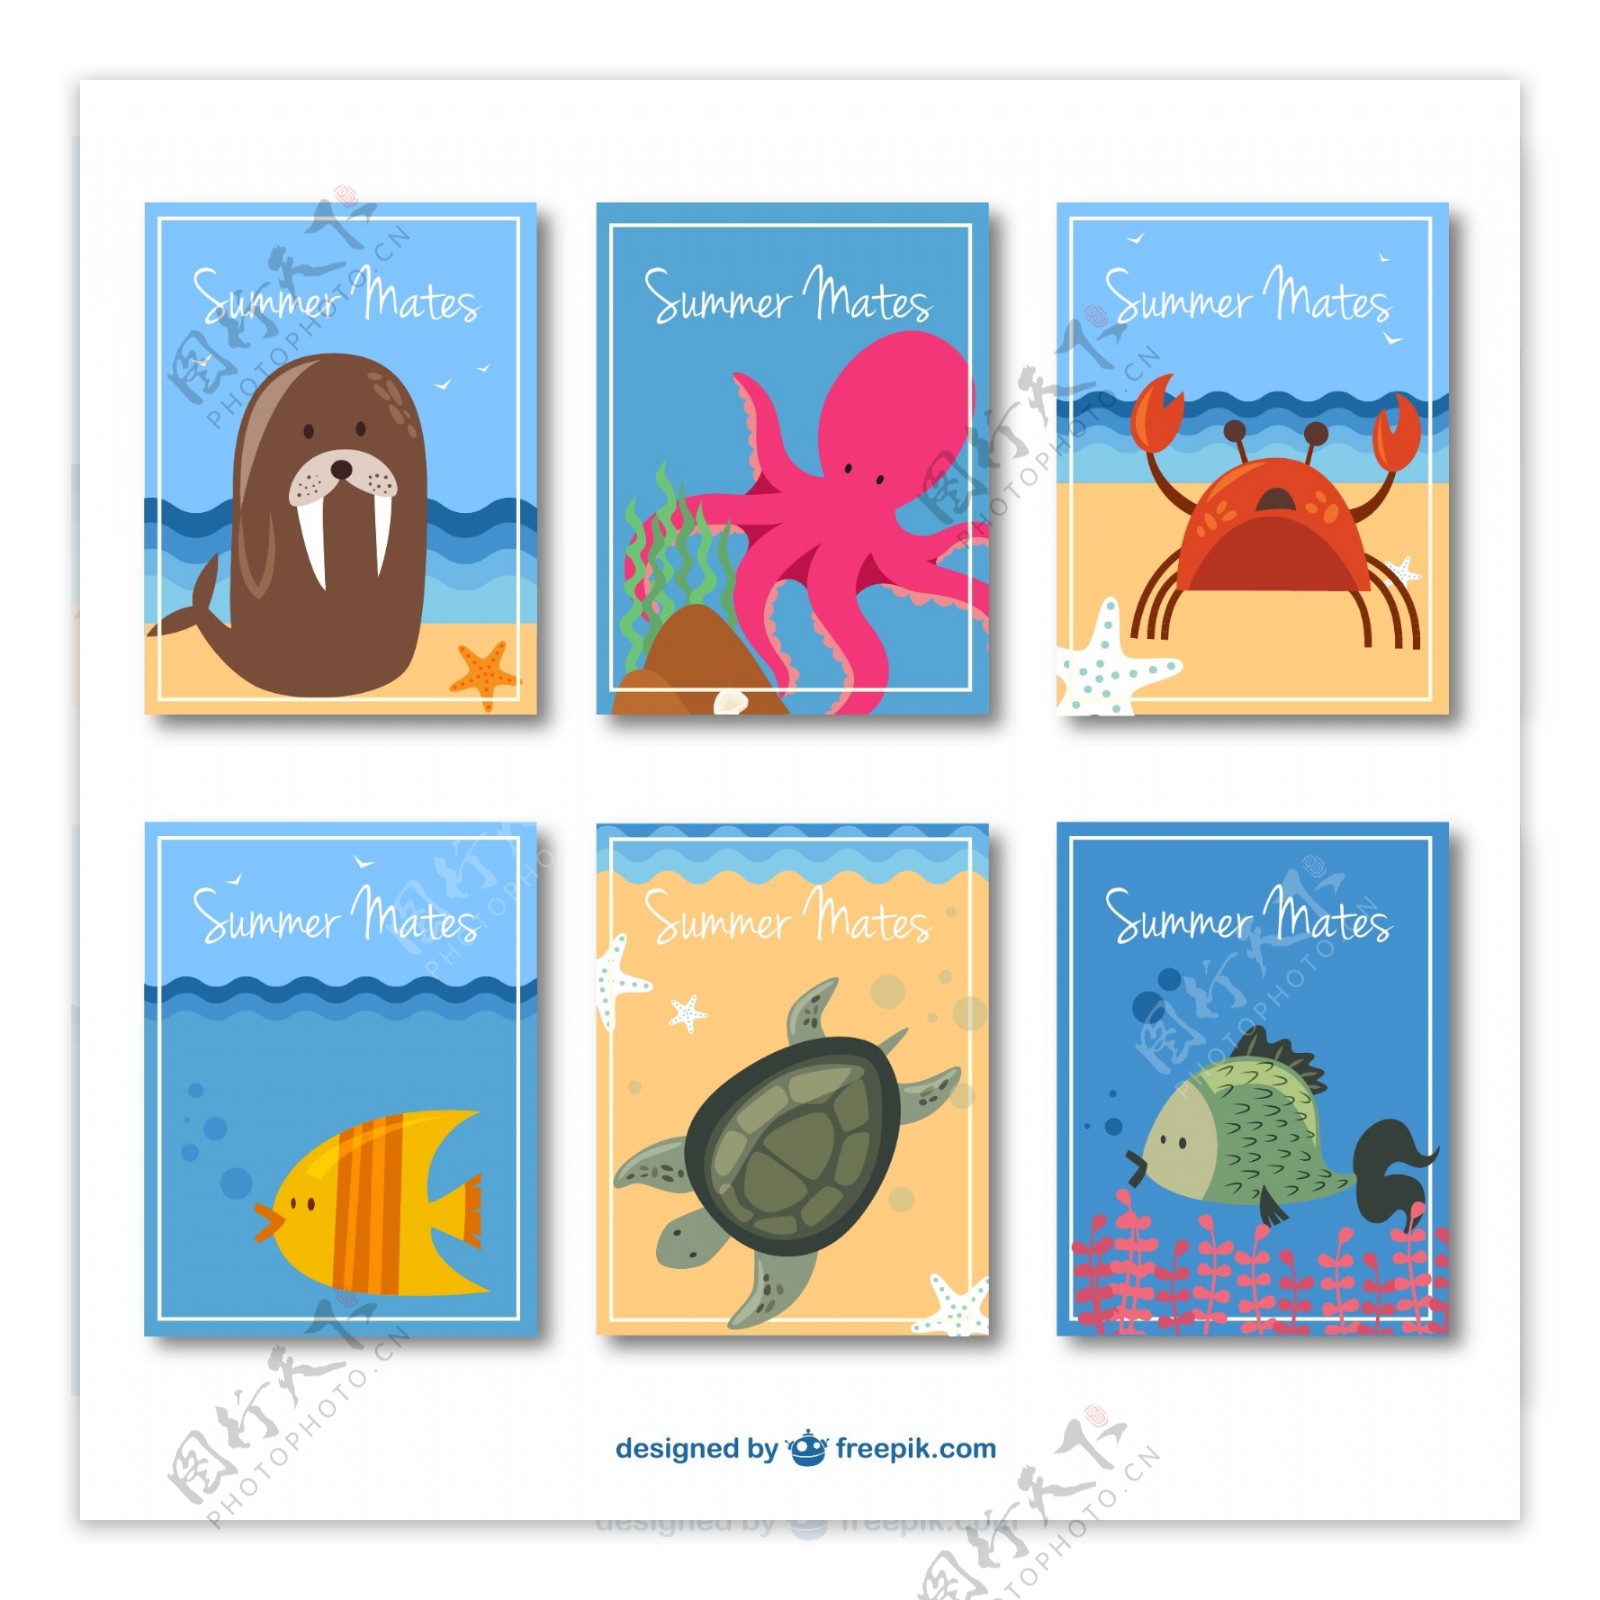 8款可爱夏季动物卡片矢量